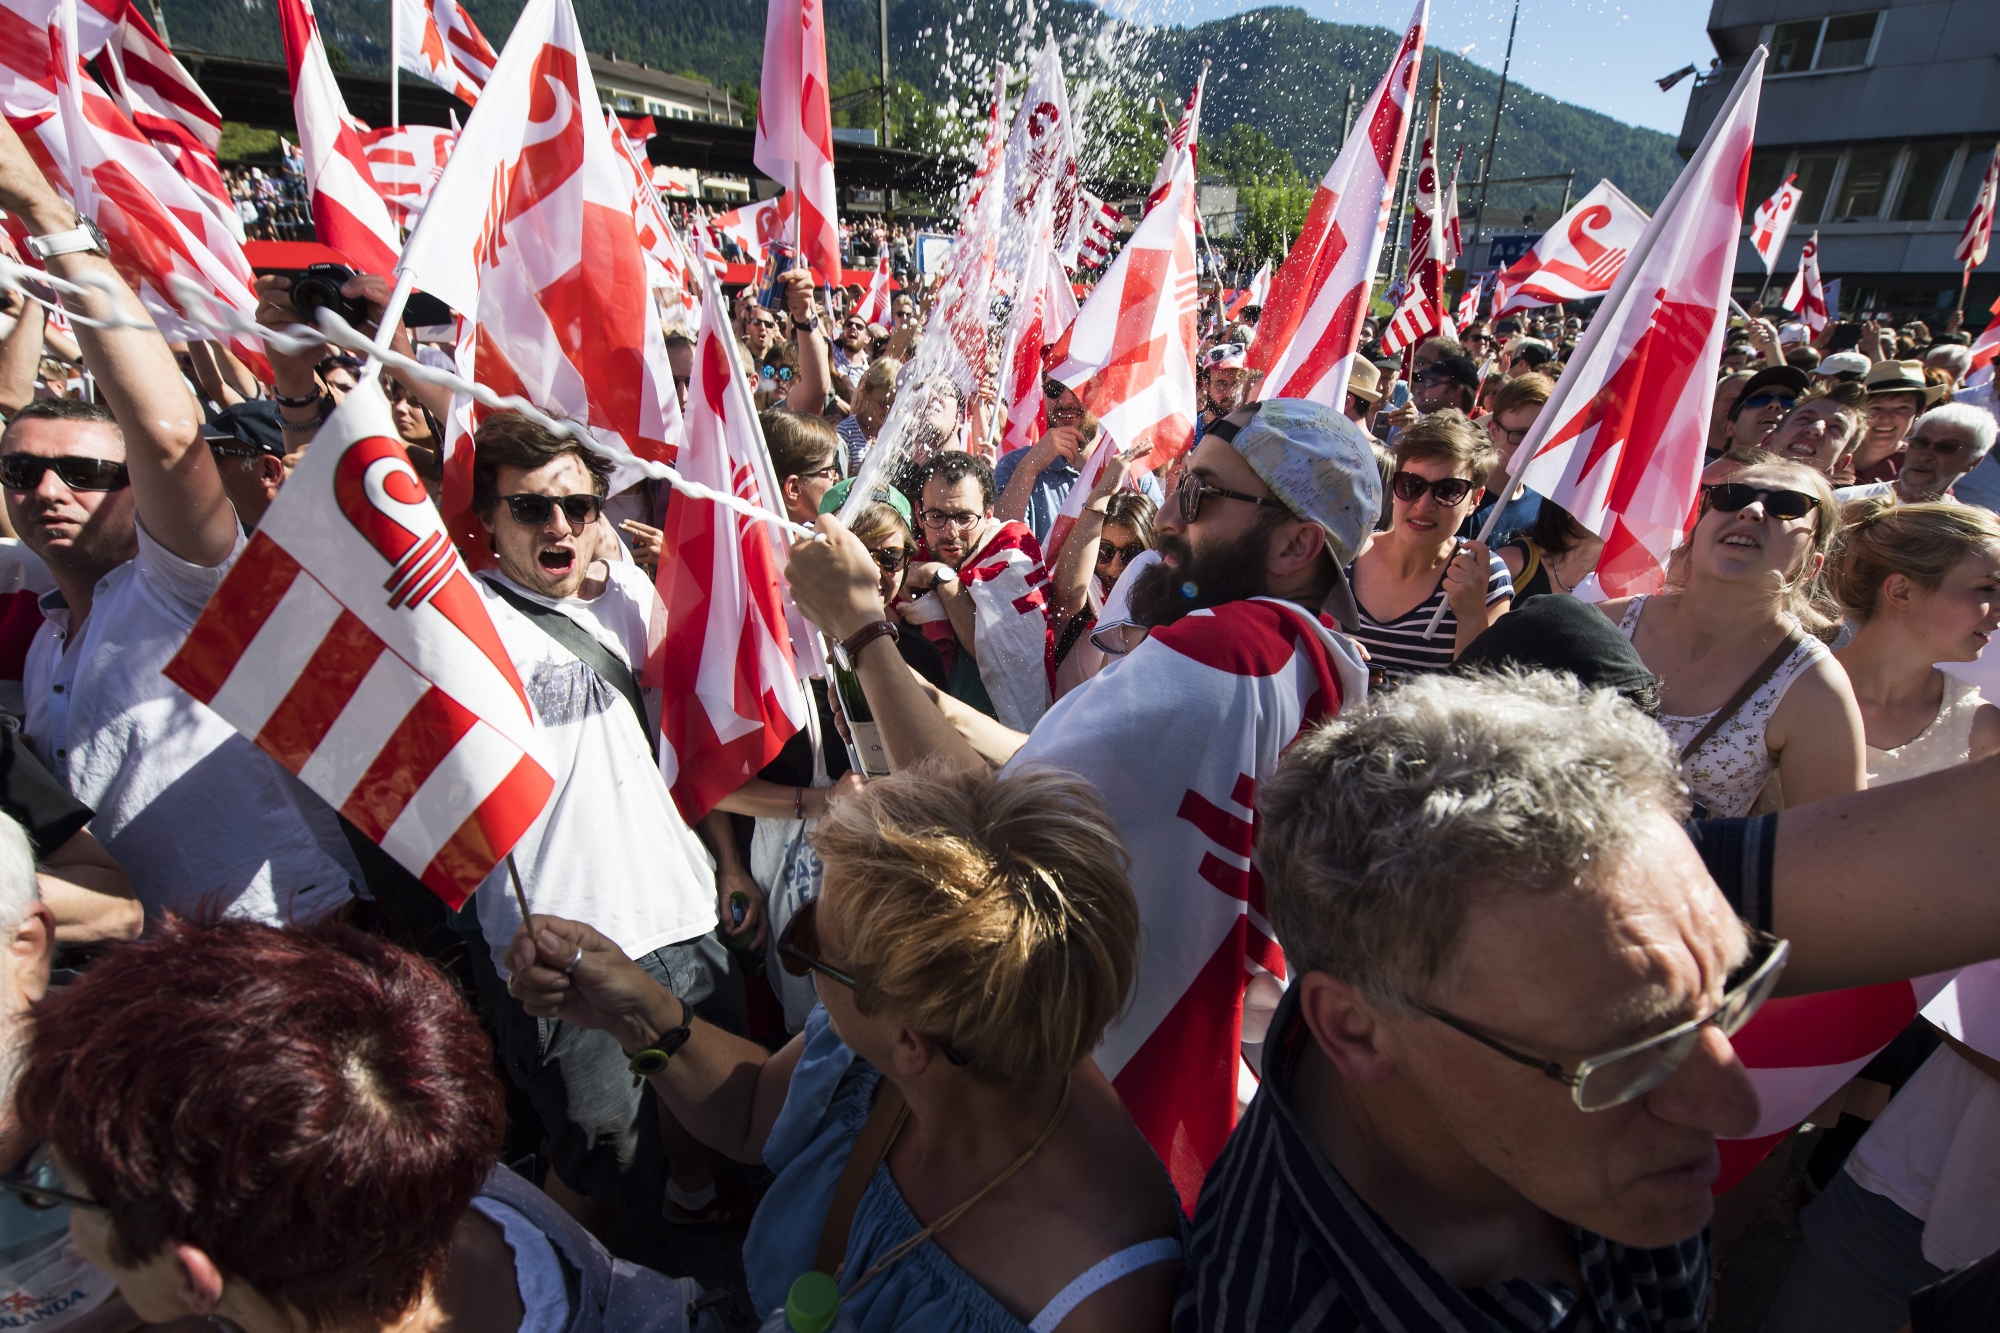 Le 18 juin, les citoyens de Moutier votaient majoritairement pour leur rattachement au canton du Jura.